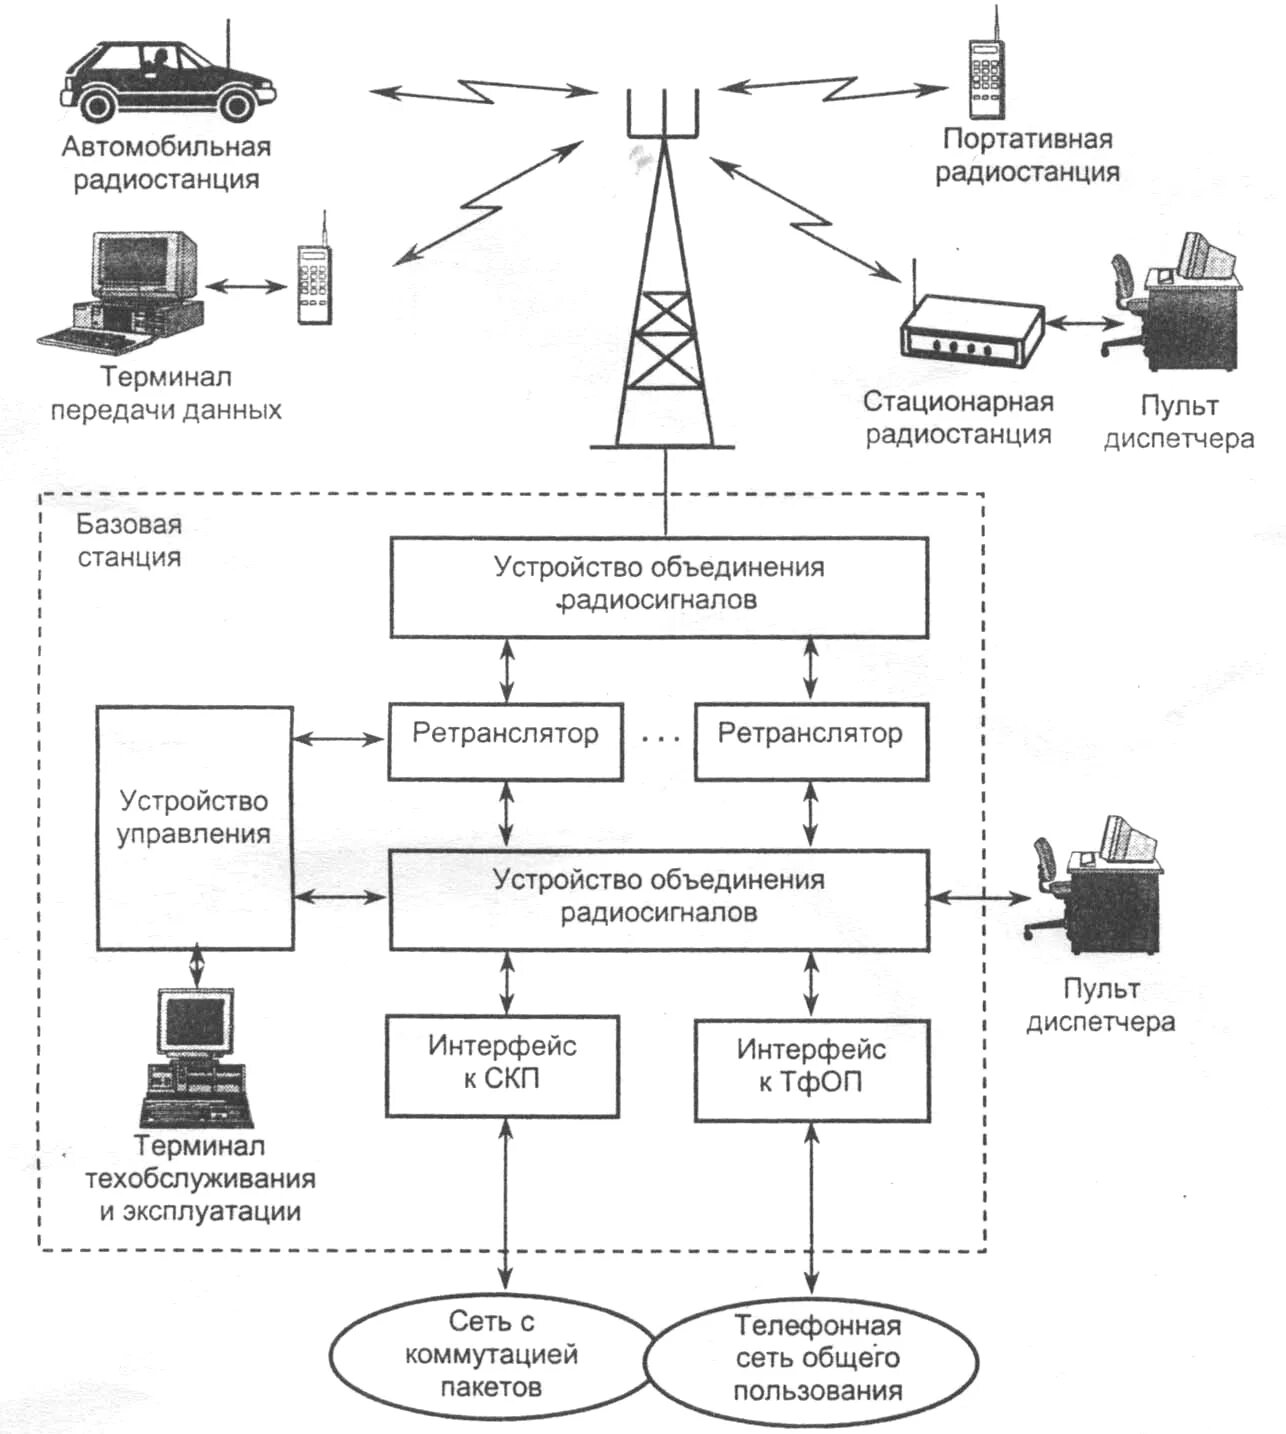 Схема организации транкинговой радиосвязи. Структурная схема транкинговой связи. Структурная схема беспроводной связи DECT. Транкинговая радиосвязь Tetra.